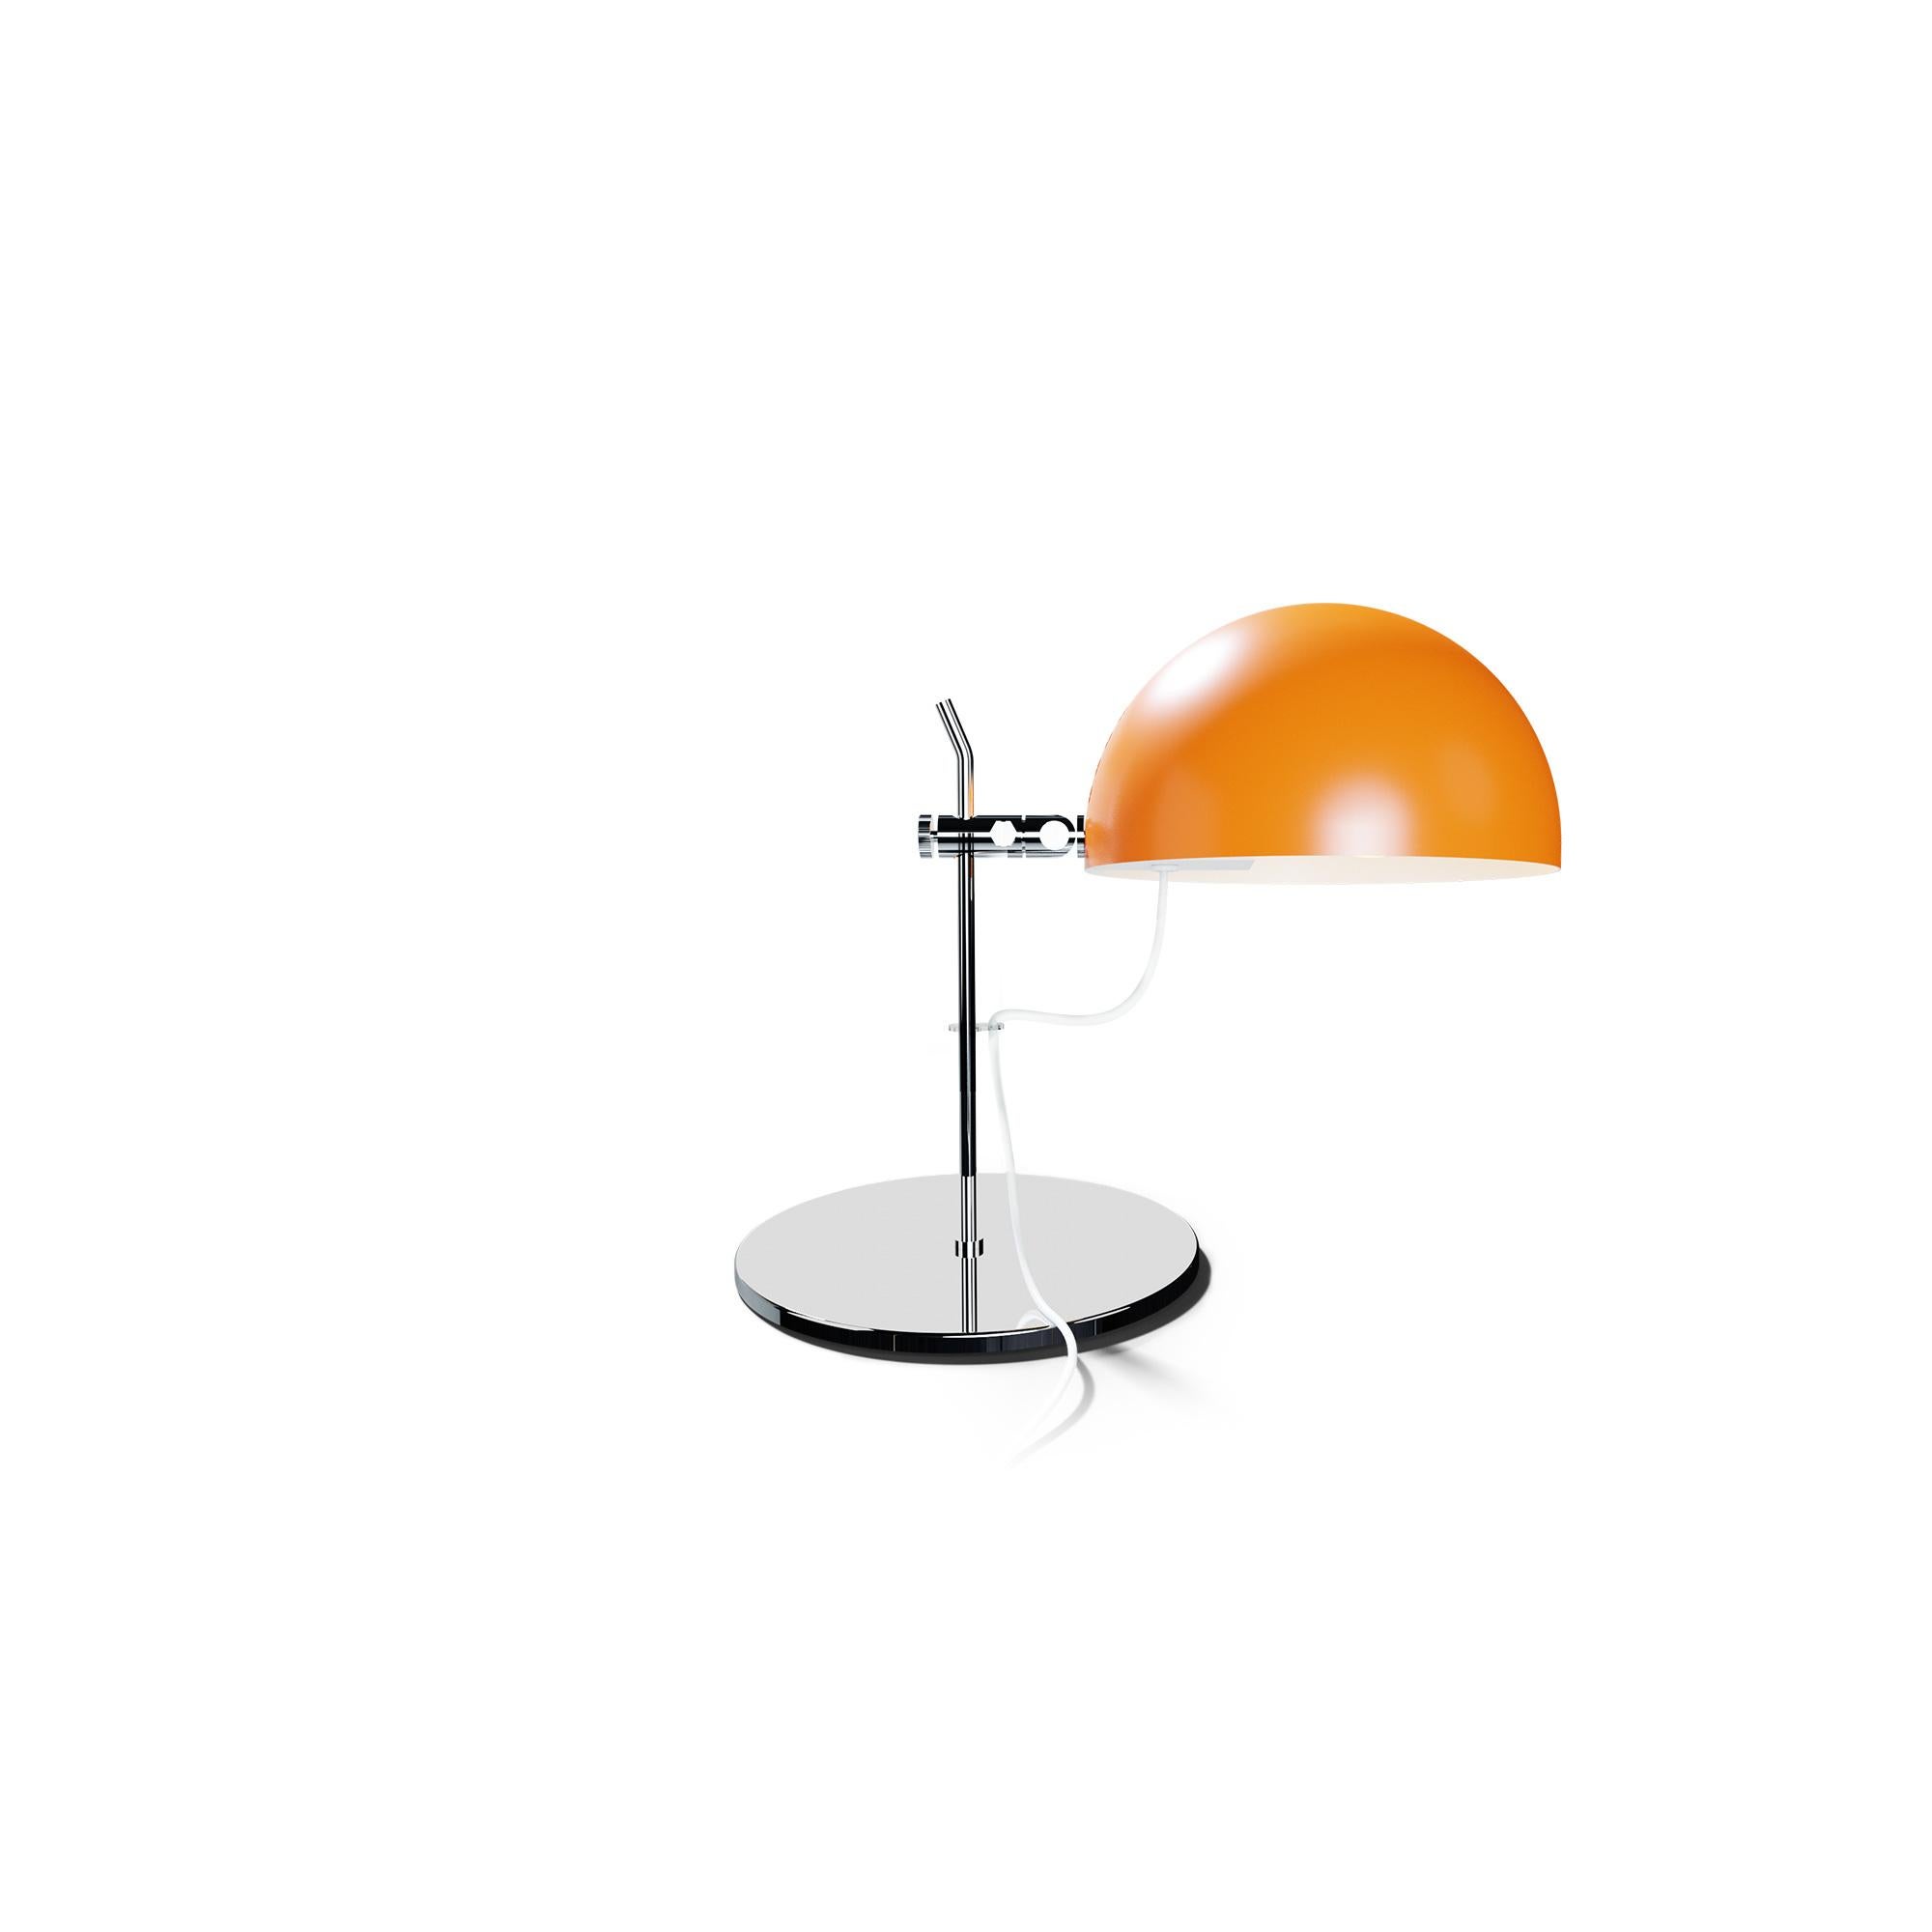 Alain Richard 'A22' Desk Lamp in Chrome for Disderot For Sale 3